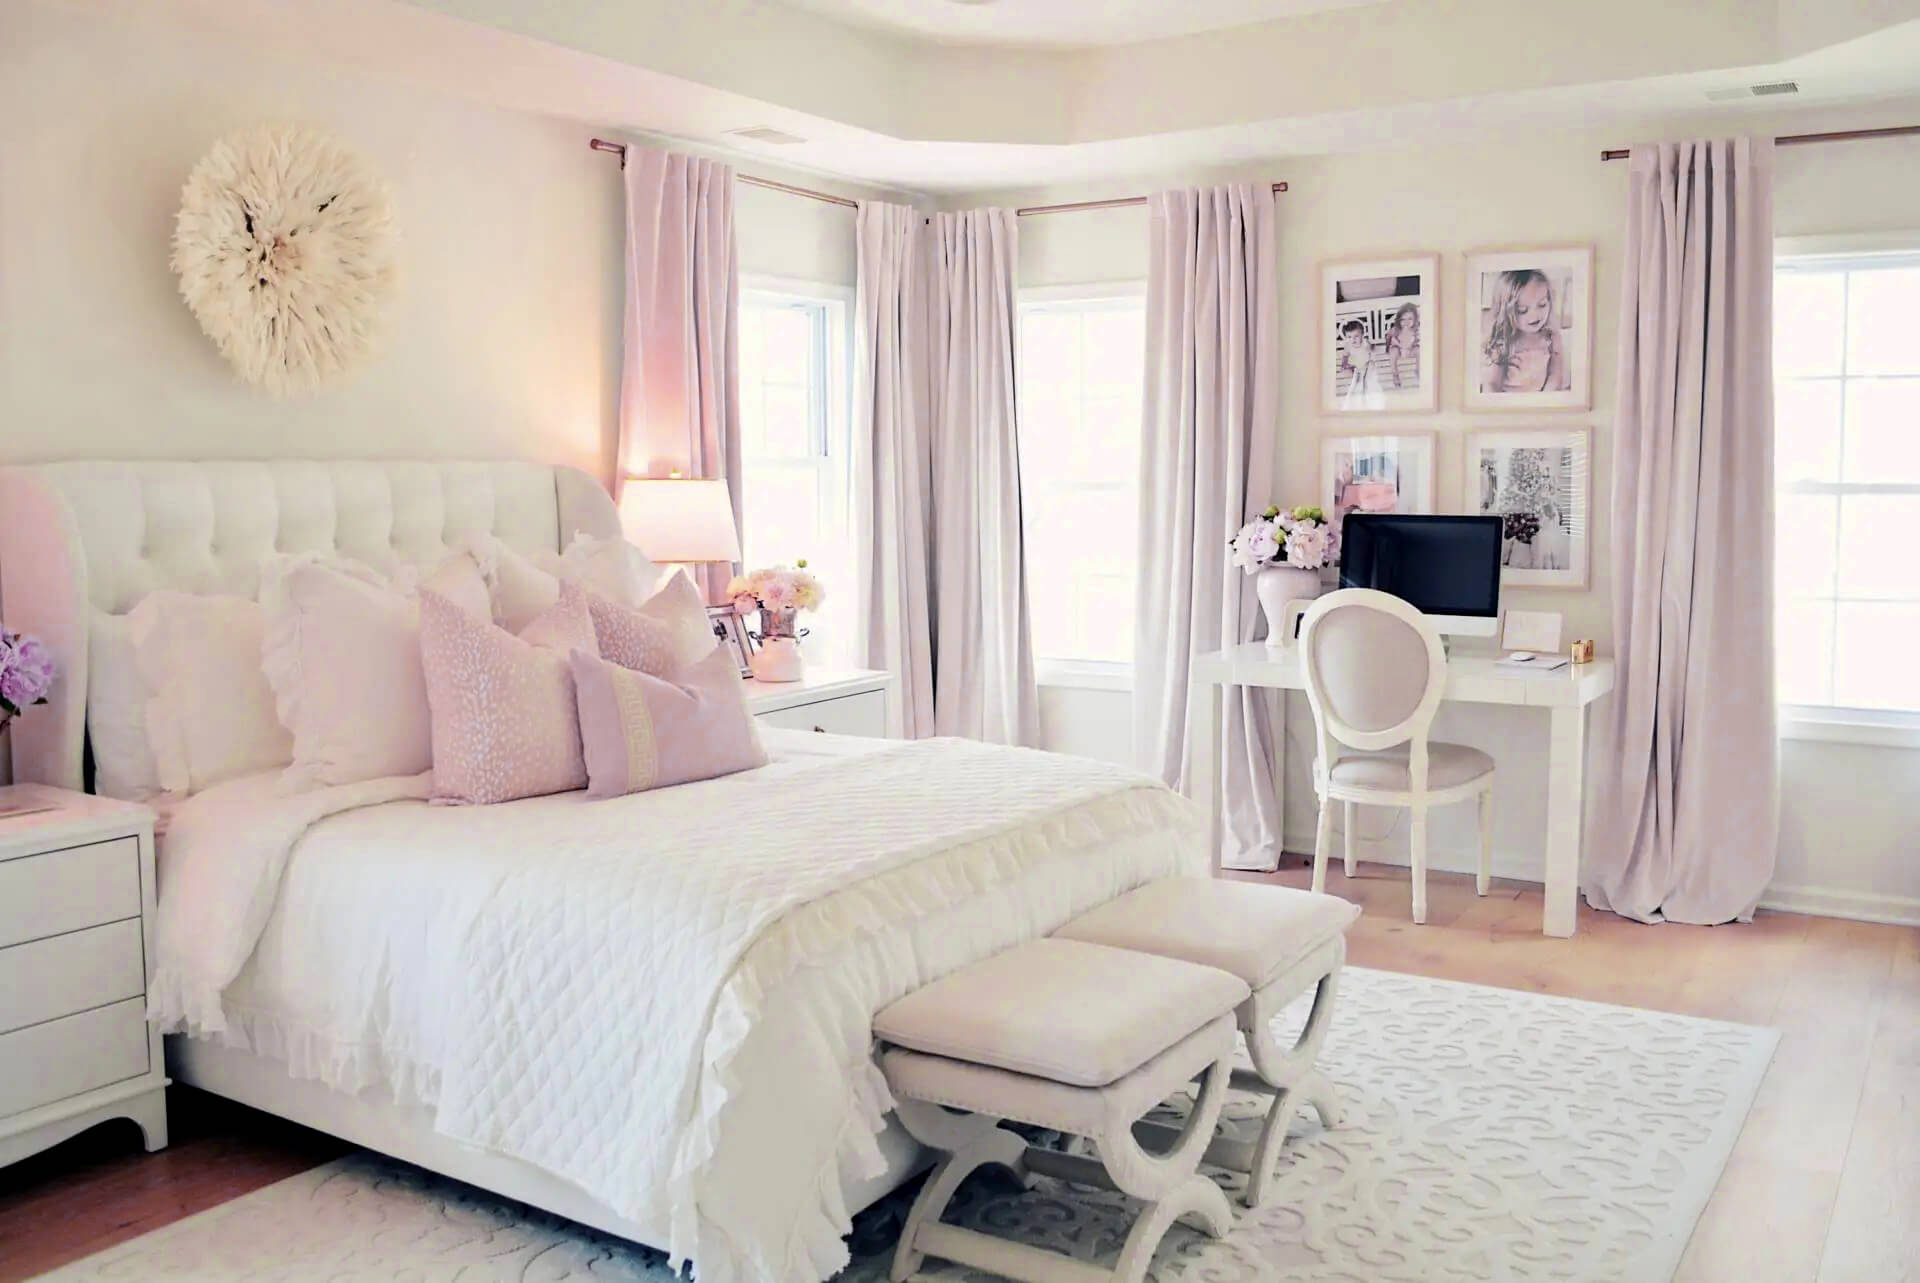 Trang trí phòng ngủ màu tím nhạt hồng phớt